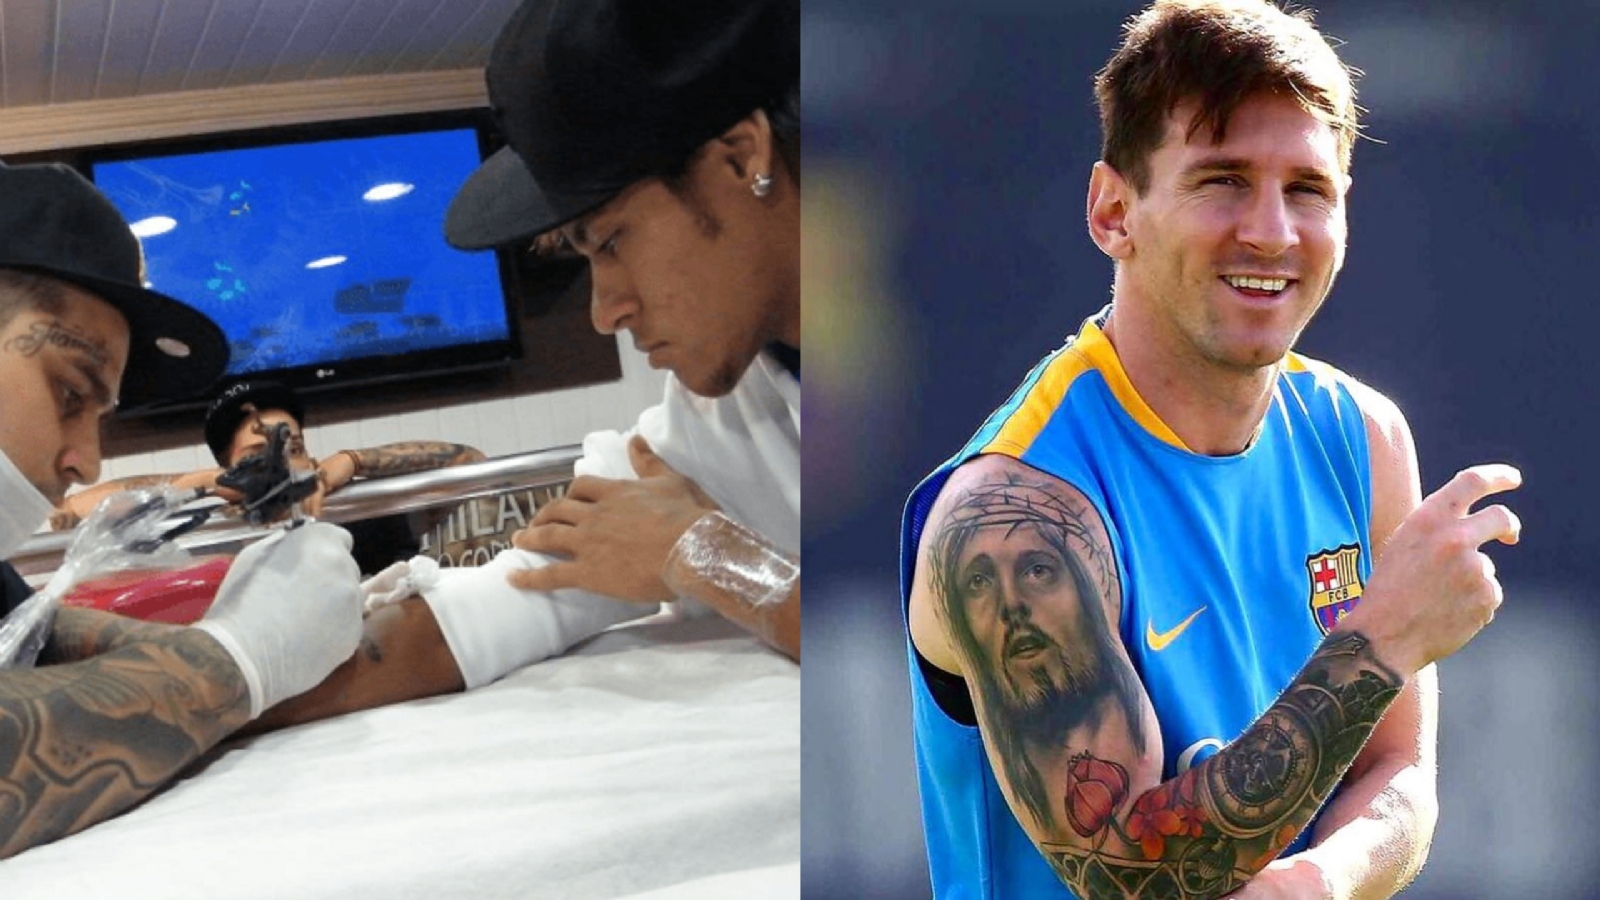 Tattoo uploaded by Joe • Neymar Jr.'s newest tattoo. #Soccer #SoccerTattoos  #Sports #NeymarJr #Olympics #RioOlympics #Rio2016 • Tattoodo